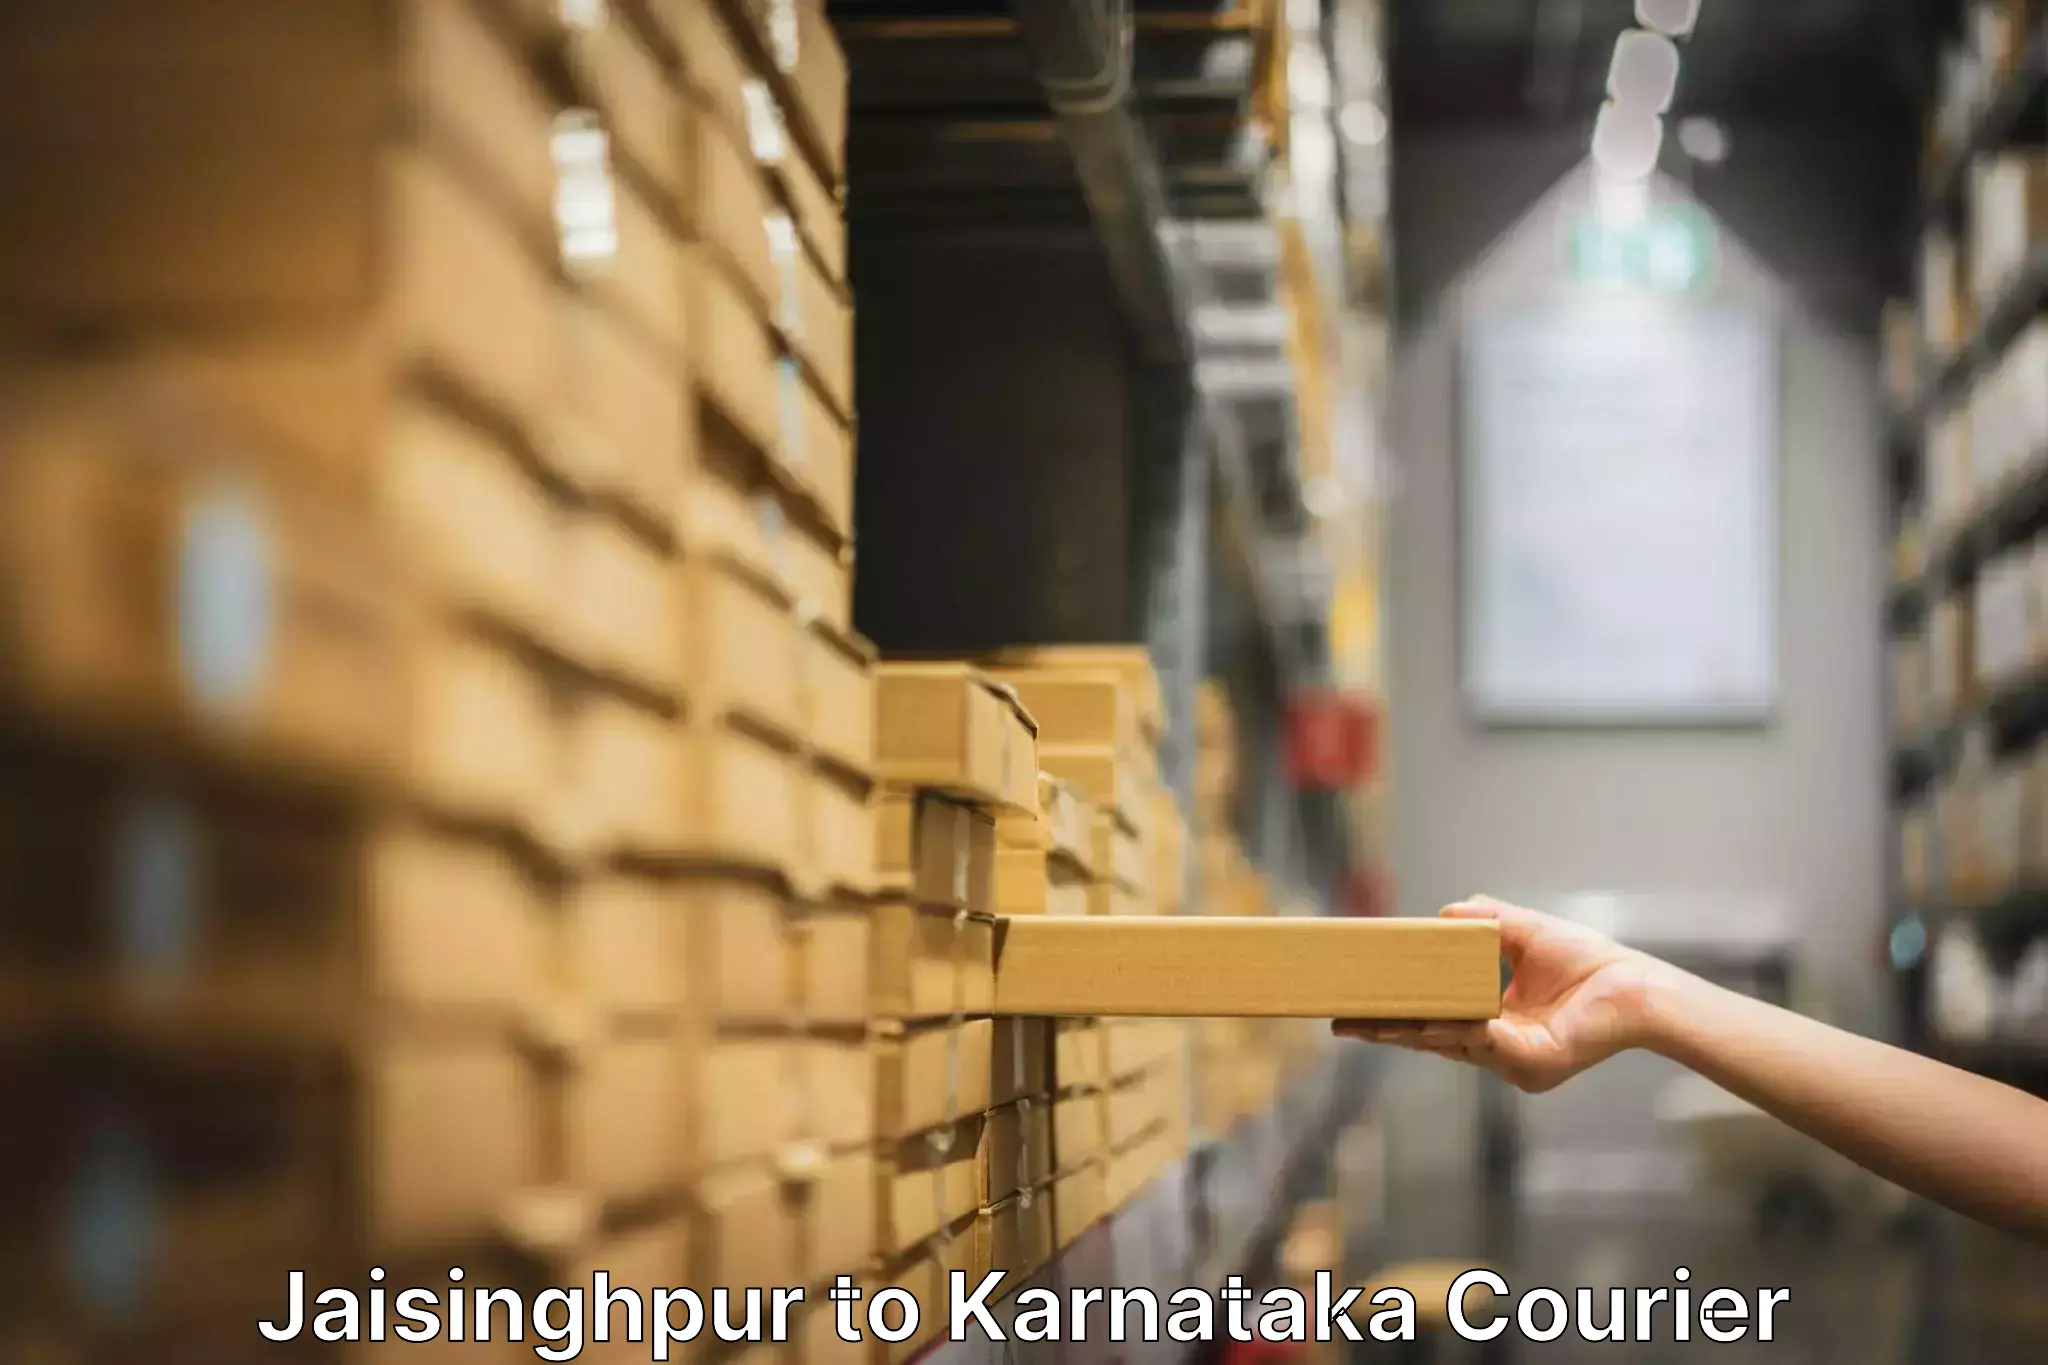 Furniture transport solutions Jaisinghpur to Munavalli